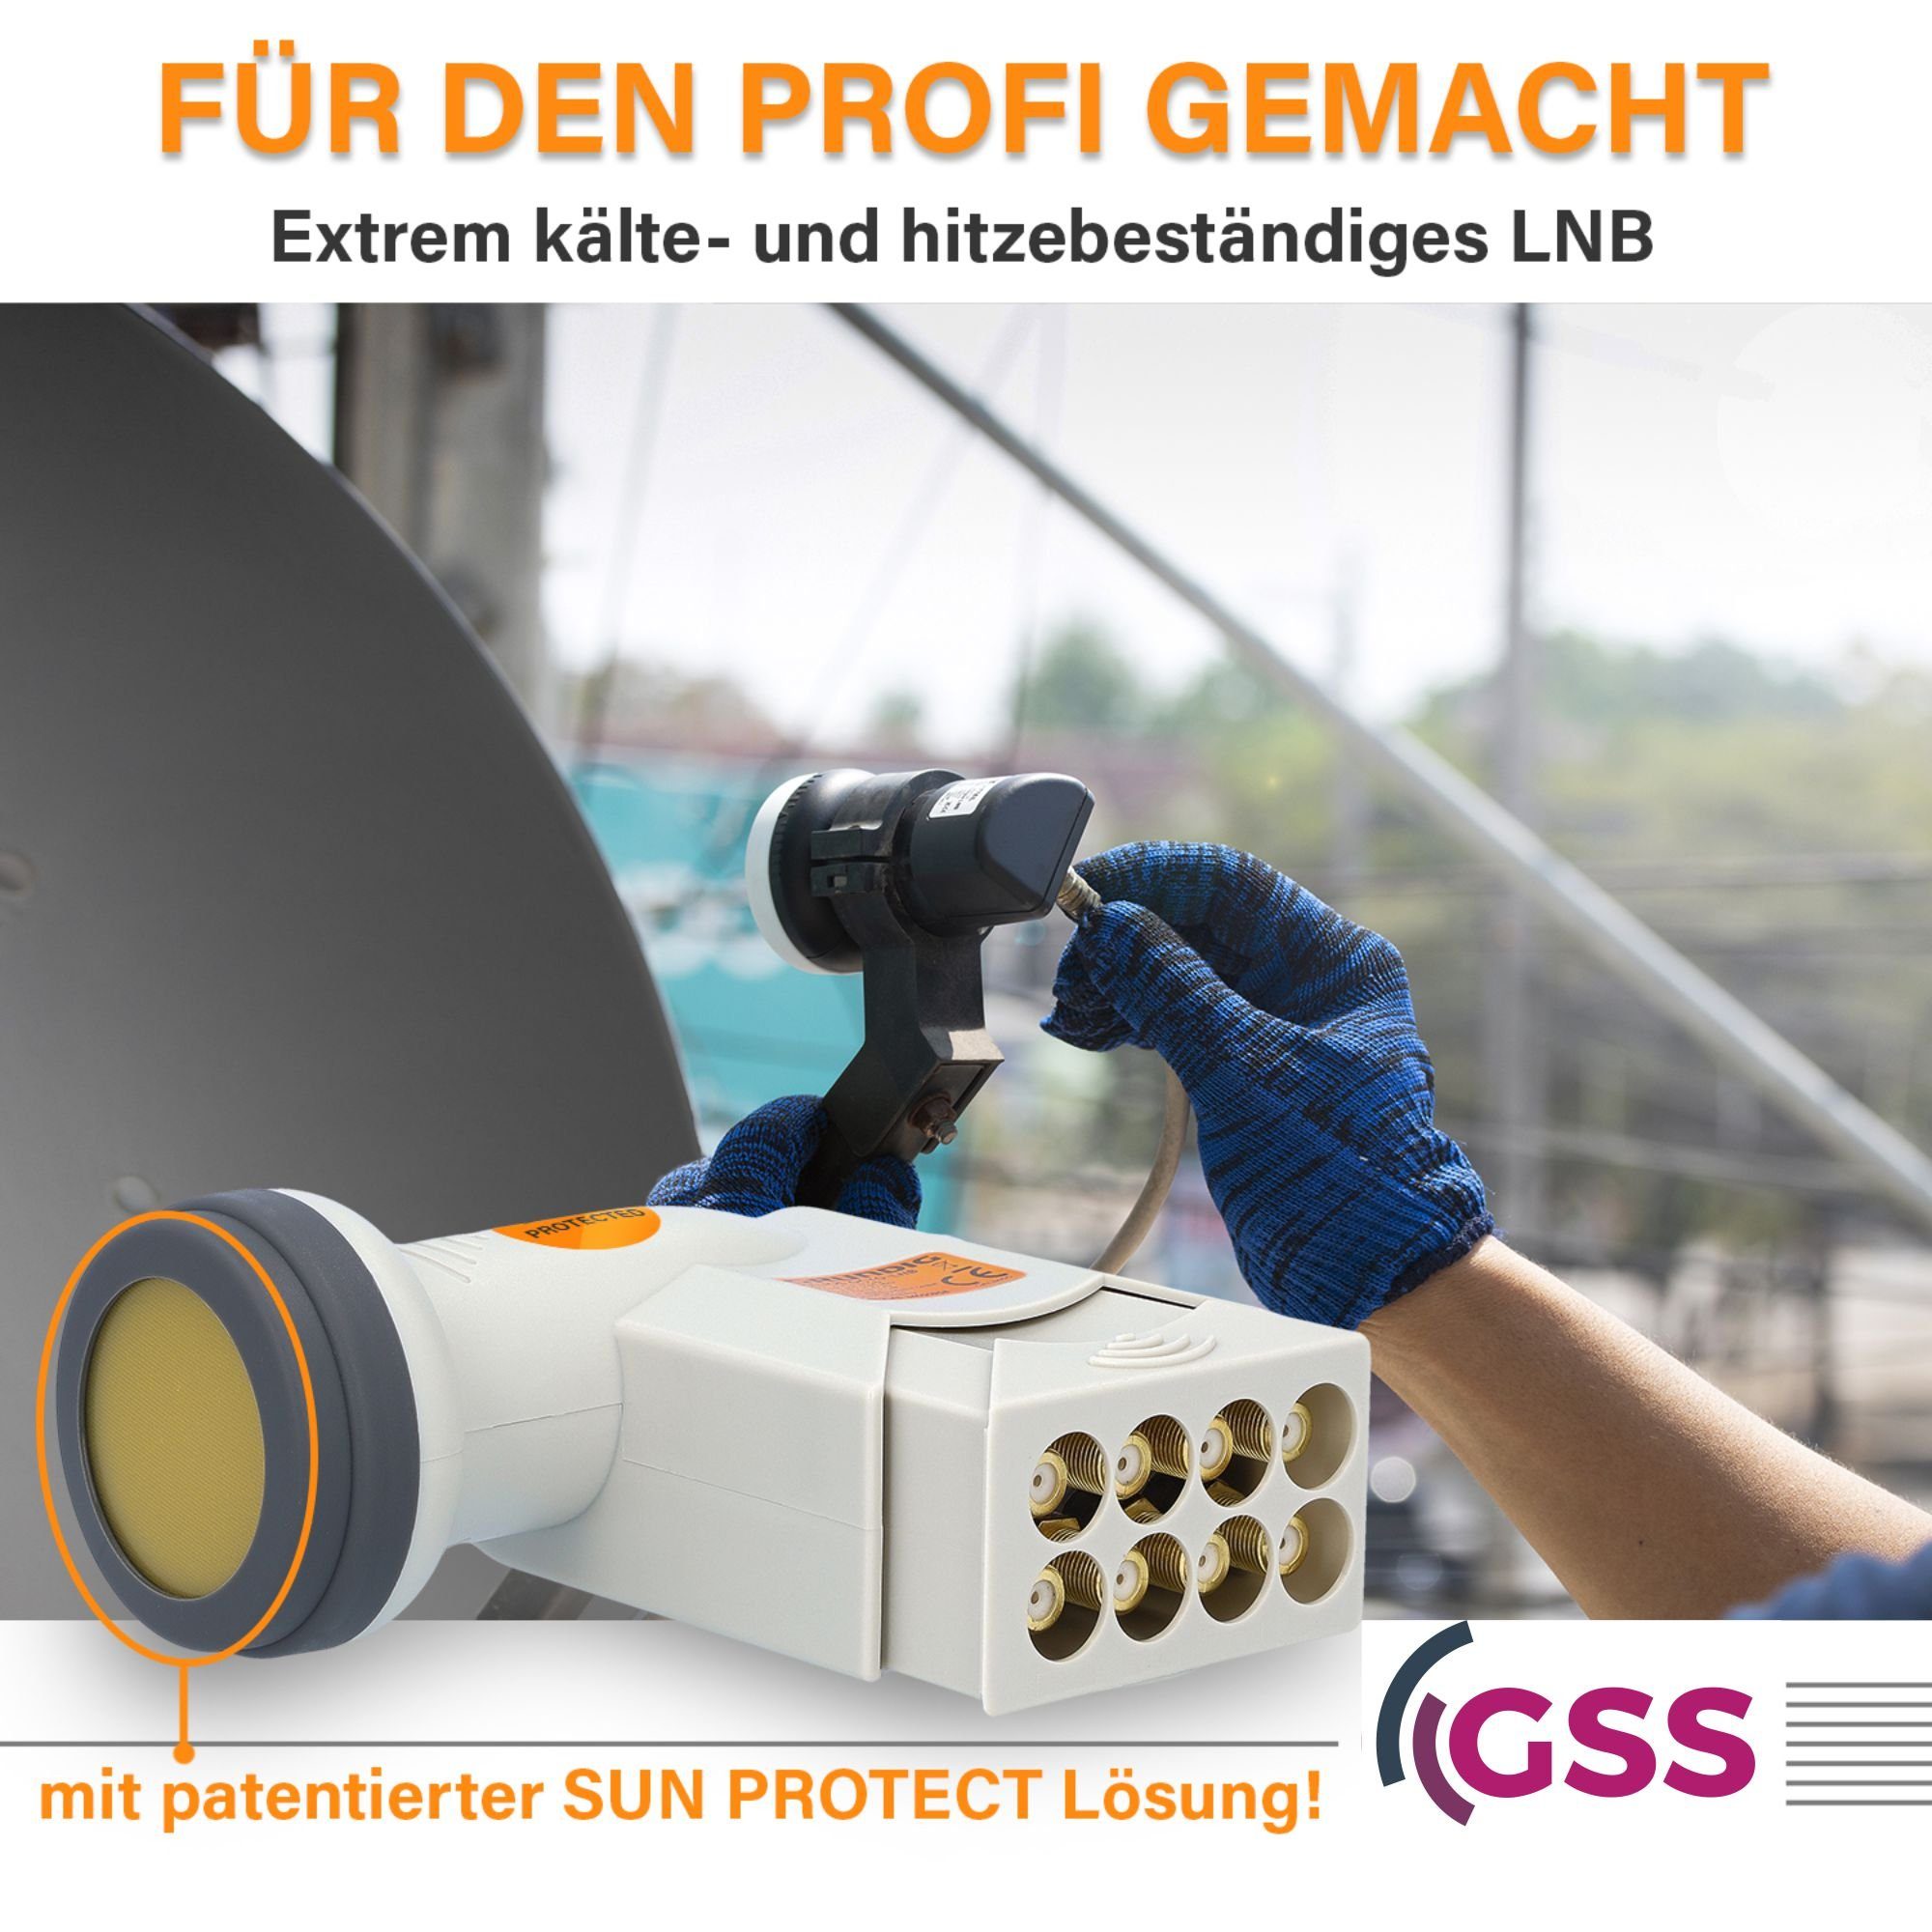 GSS Helios Octo LNB LTE & (UV Universal-Octo-LNB 16X + Wetterschutz, Aufdrehhilfe F-Stecker) Filter